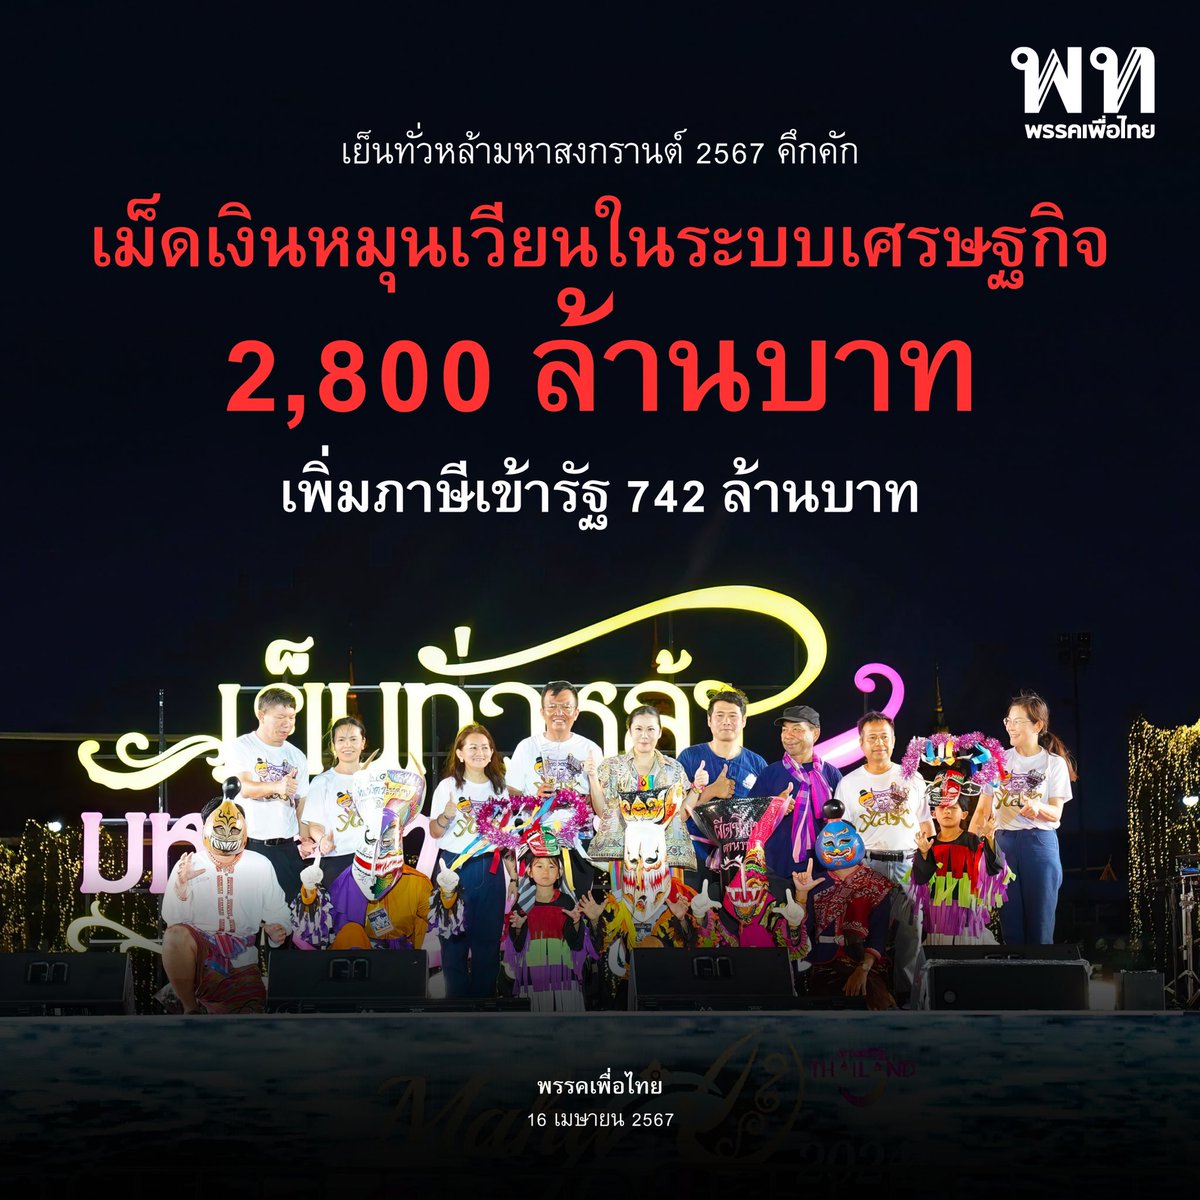 • เย็นทั่วหล้า มหาสงกรานต์ 67 คึกคัก เม็ดเงินหมุนเวียนในระบบเศรษฐกิจ  2,800 ล้านบาท เพิ่มภาษีเข้ารัฐ 742 ล้านบาท • 

ความสำเร็จการจัดงาน Maha Songkran World Water Festival 2024 เย็นทั่วหล้า มหาสงกรานต์ 2567 บริเวณถนนราชดำเนินกลางและพื้นที่ท้องสนามหลวง 

ชัย วัชรงค์